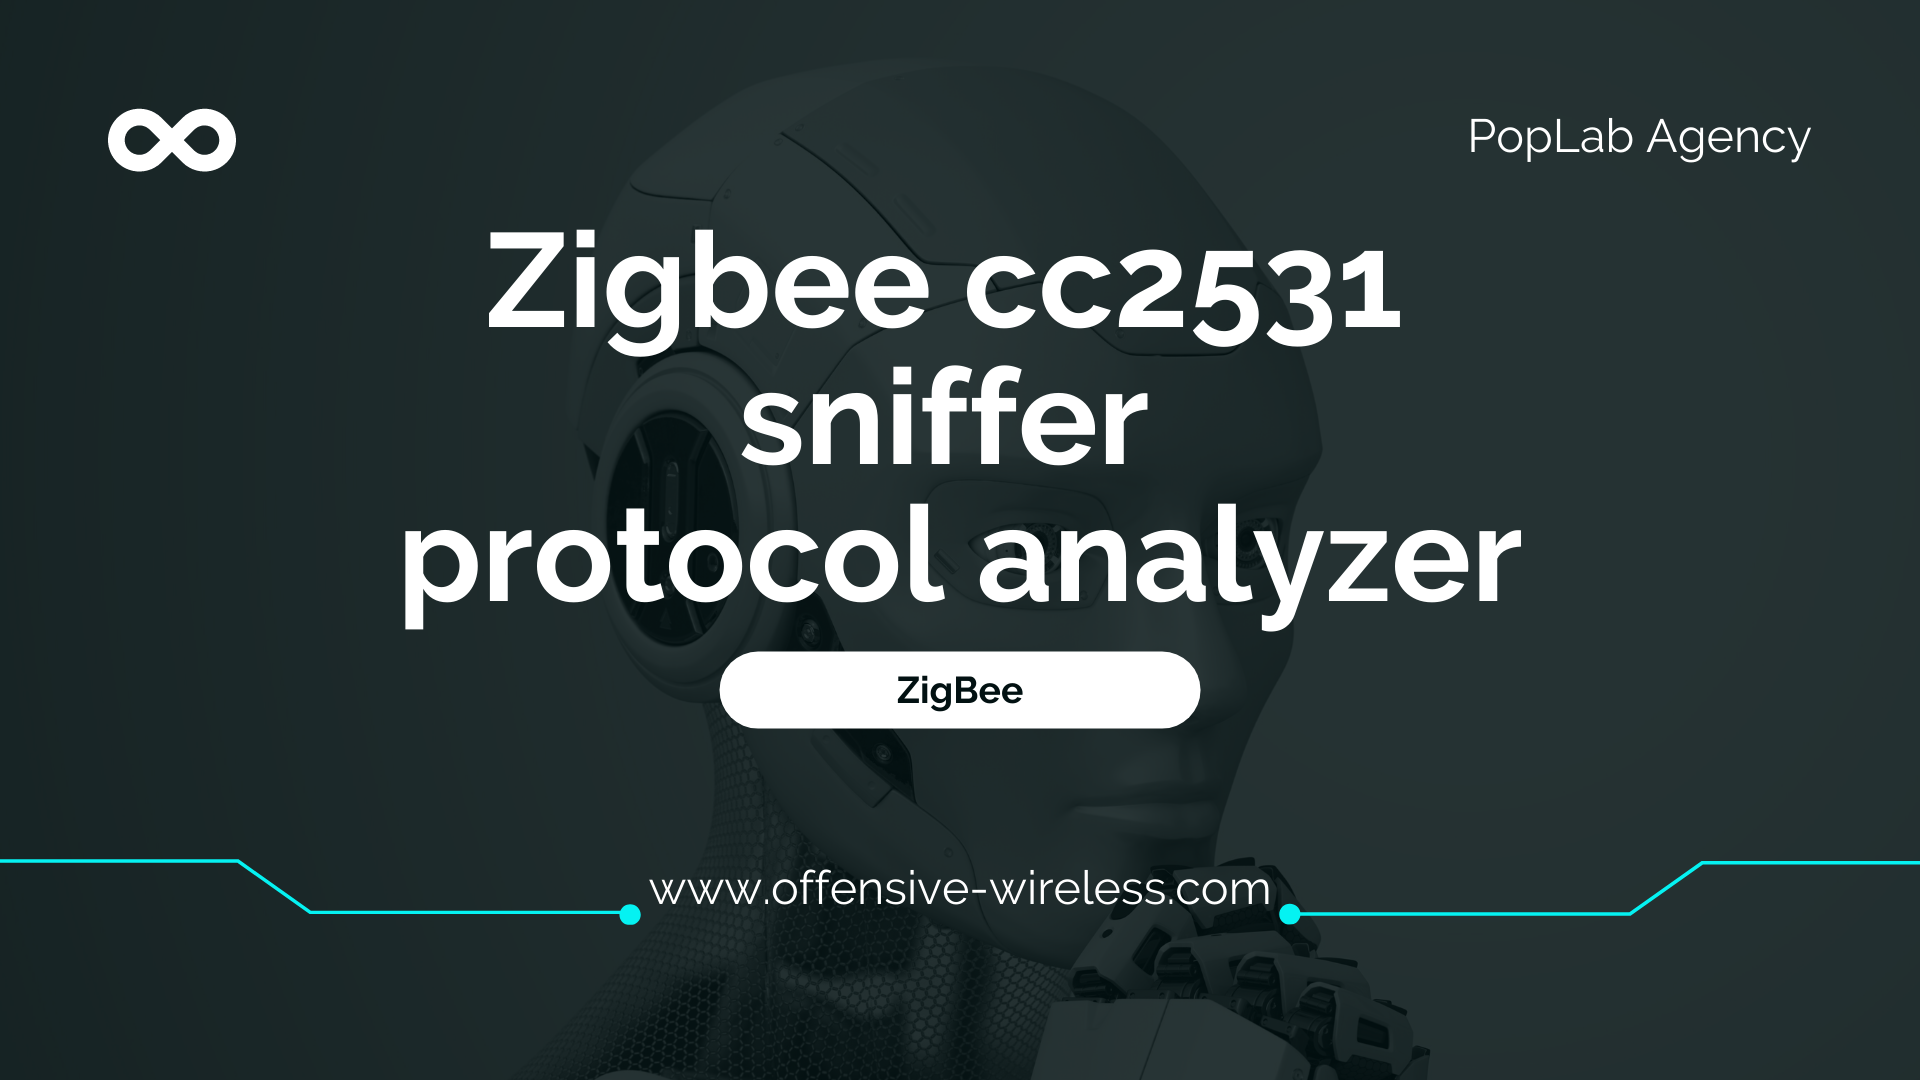 Zigbee cc2531 sniffer protocol analyzer